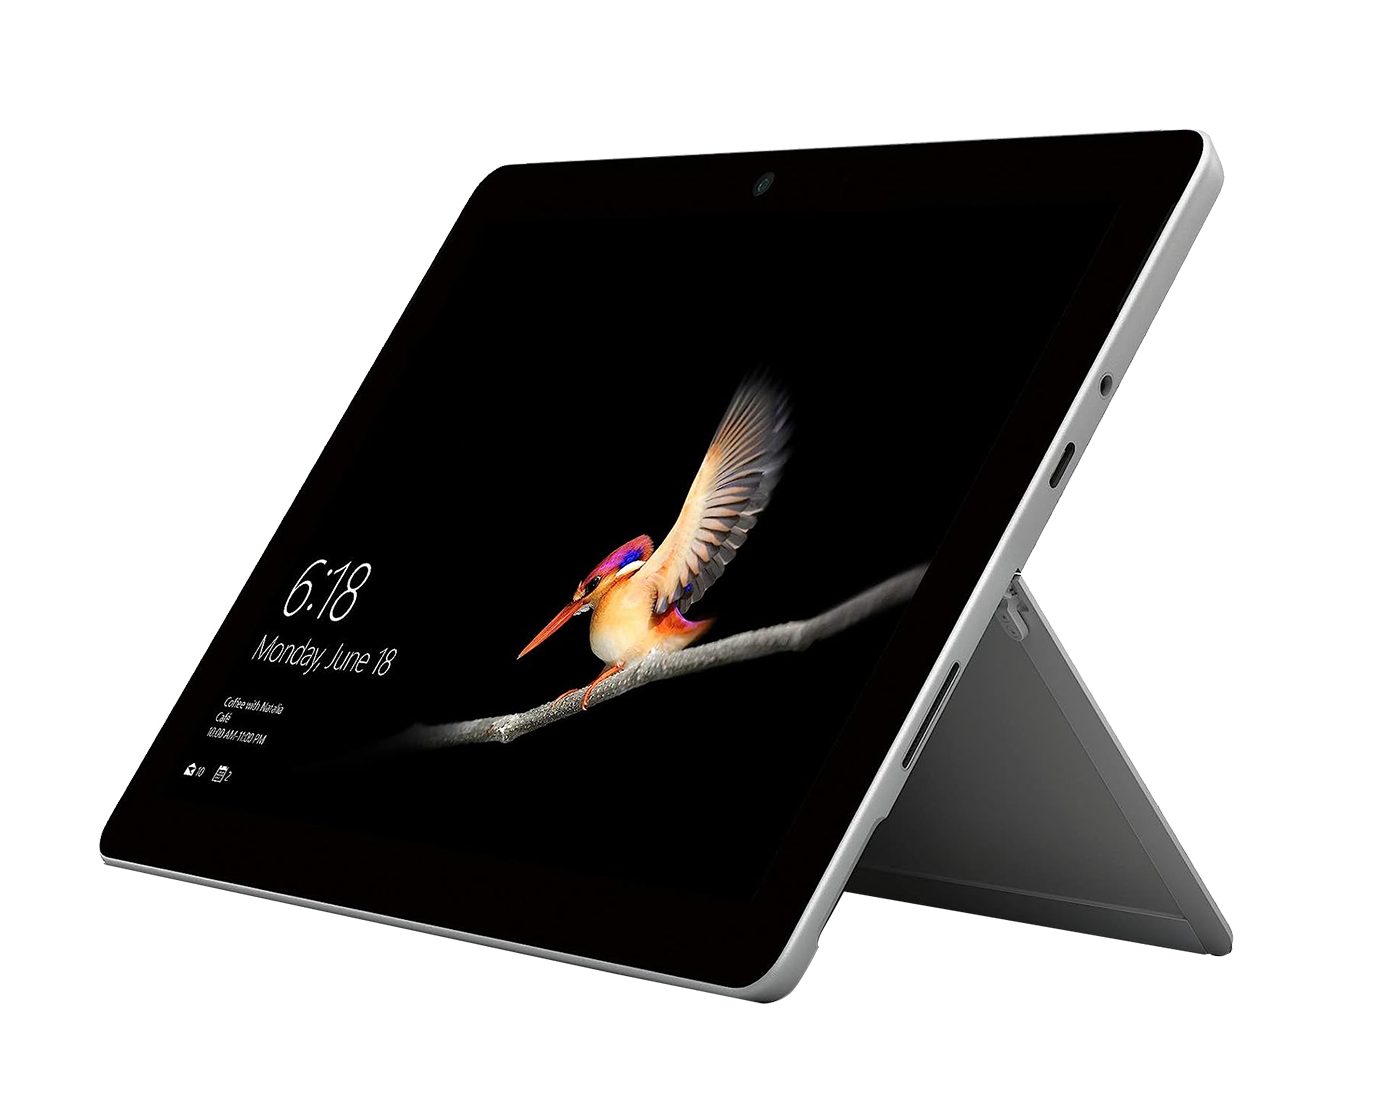 Microsoft Surface Go / P. Gold 4415y a 1,6ghz / 8Gb ram / 128Gb ssd / 10" / WIn 10 Pro ¡Liquidación!